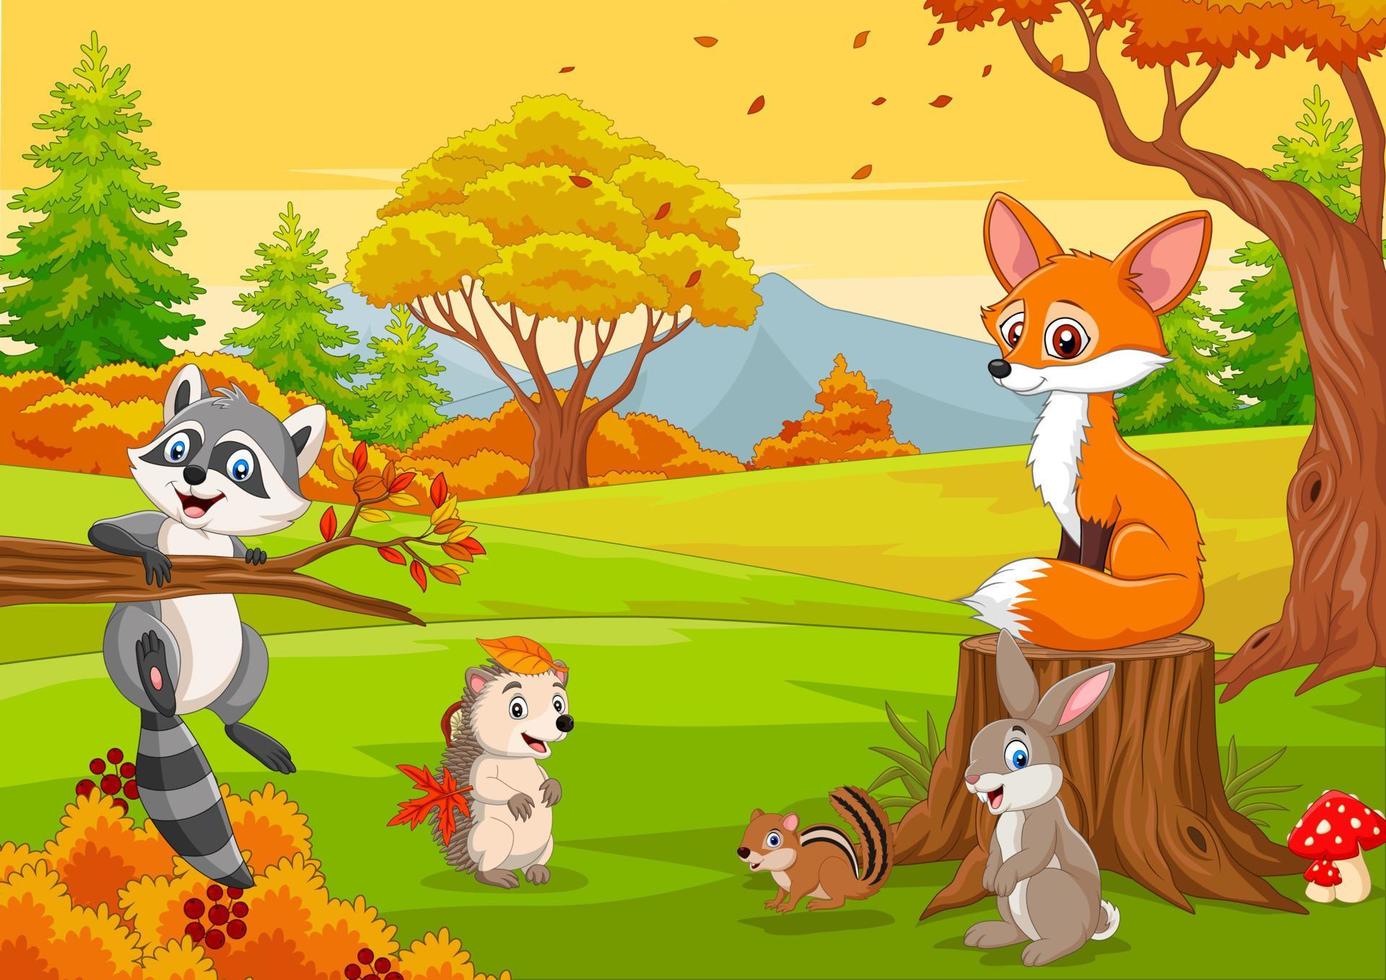 animais selvagens dos desenhos animados na floresta de outono vetor